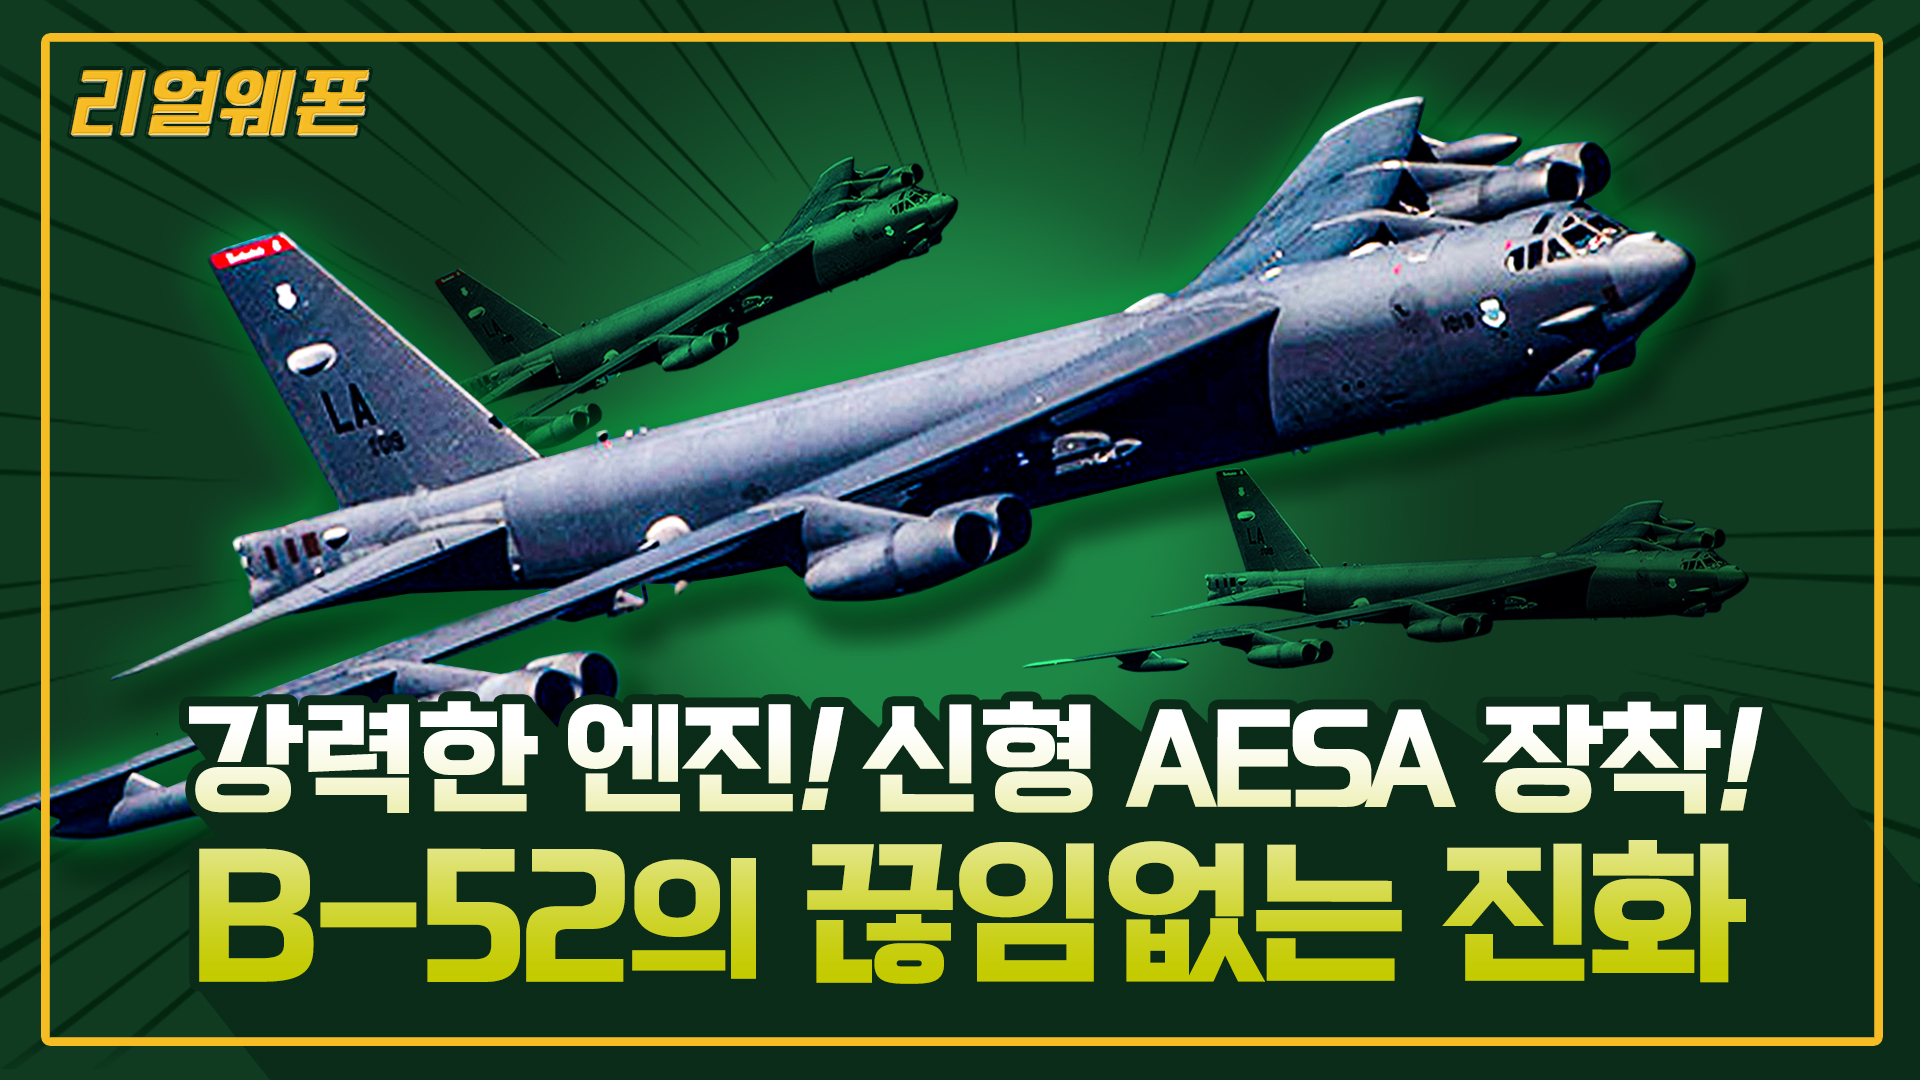 B-52의 화려한 변신! ◇최강! 최